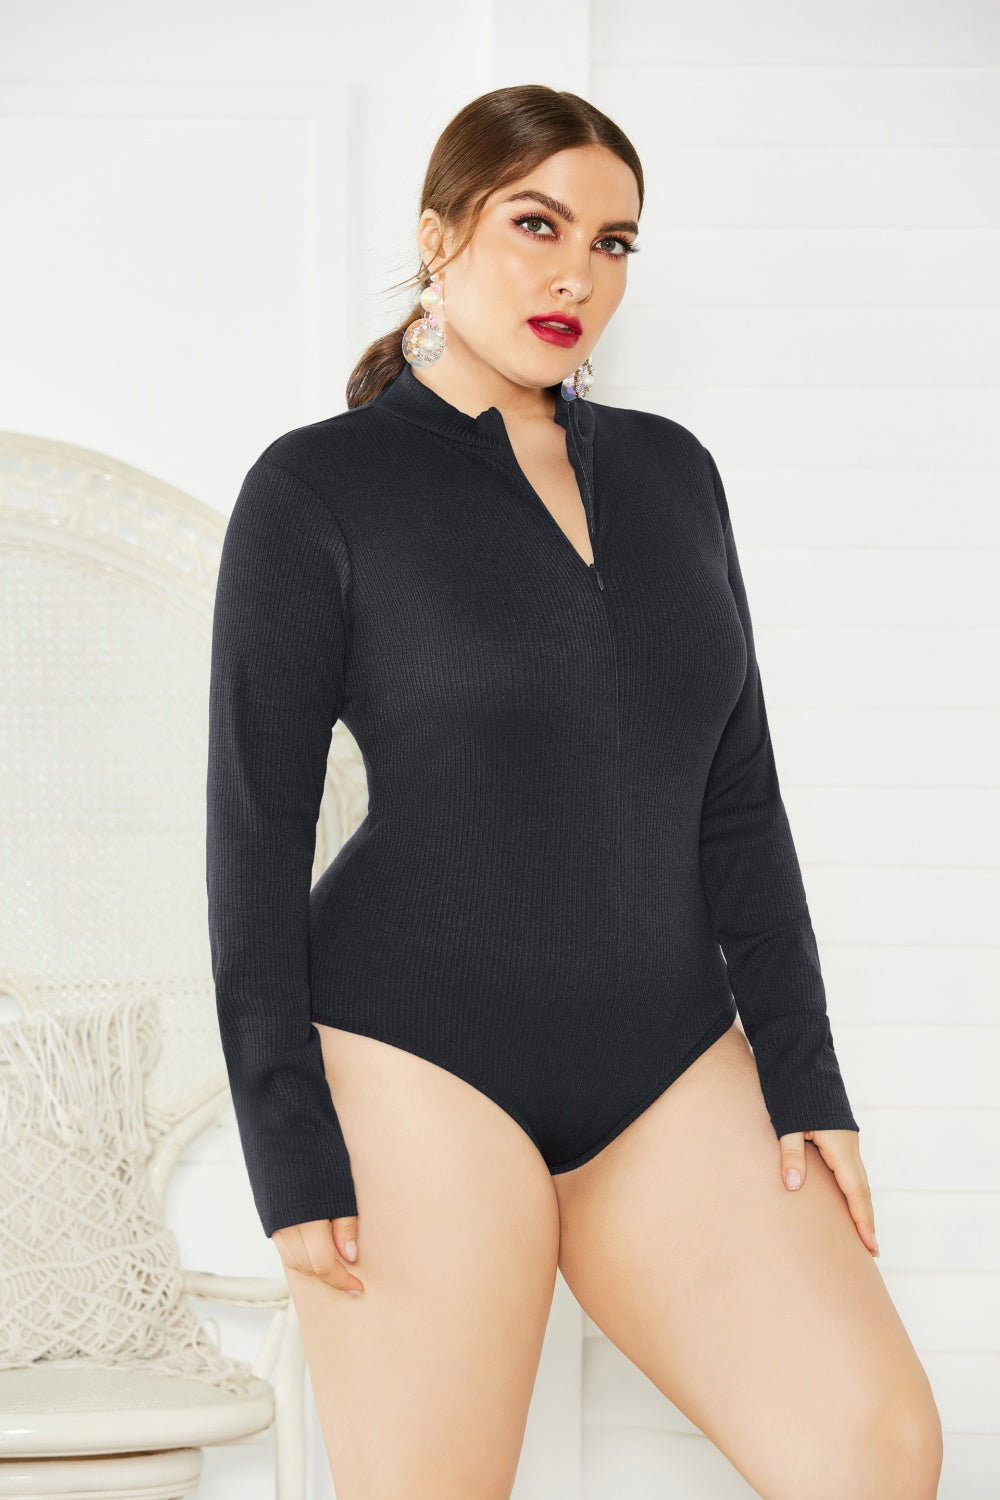 BodiModi UrbanFit® Zip-Up Long Sleeve Bodysuit - Trendy Plus Size